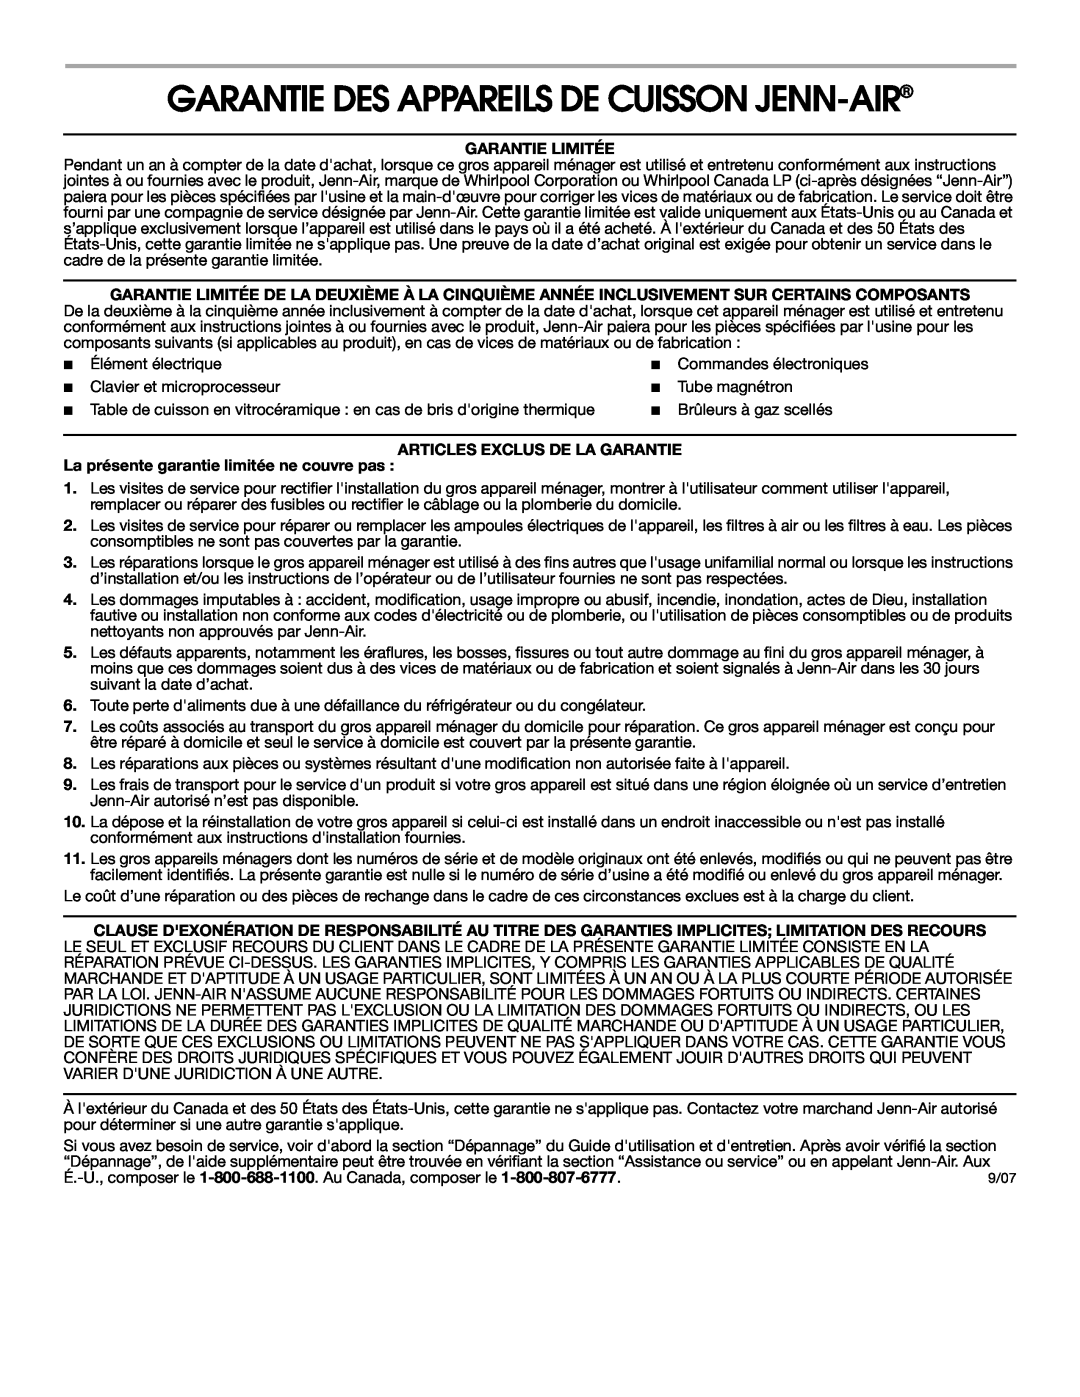 Jenn-Air 8111P536-60 warranty Garantie Des Appareils De Cuisson Jenn-Air, Garantie Limitée, Articles Exclus De La Garantie 